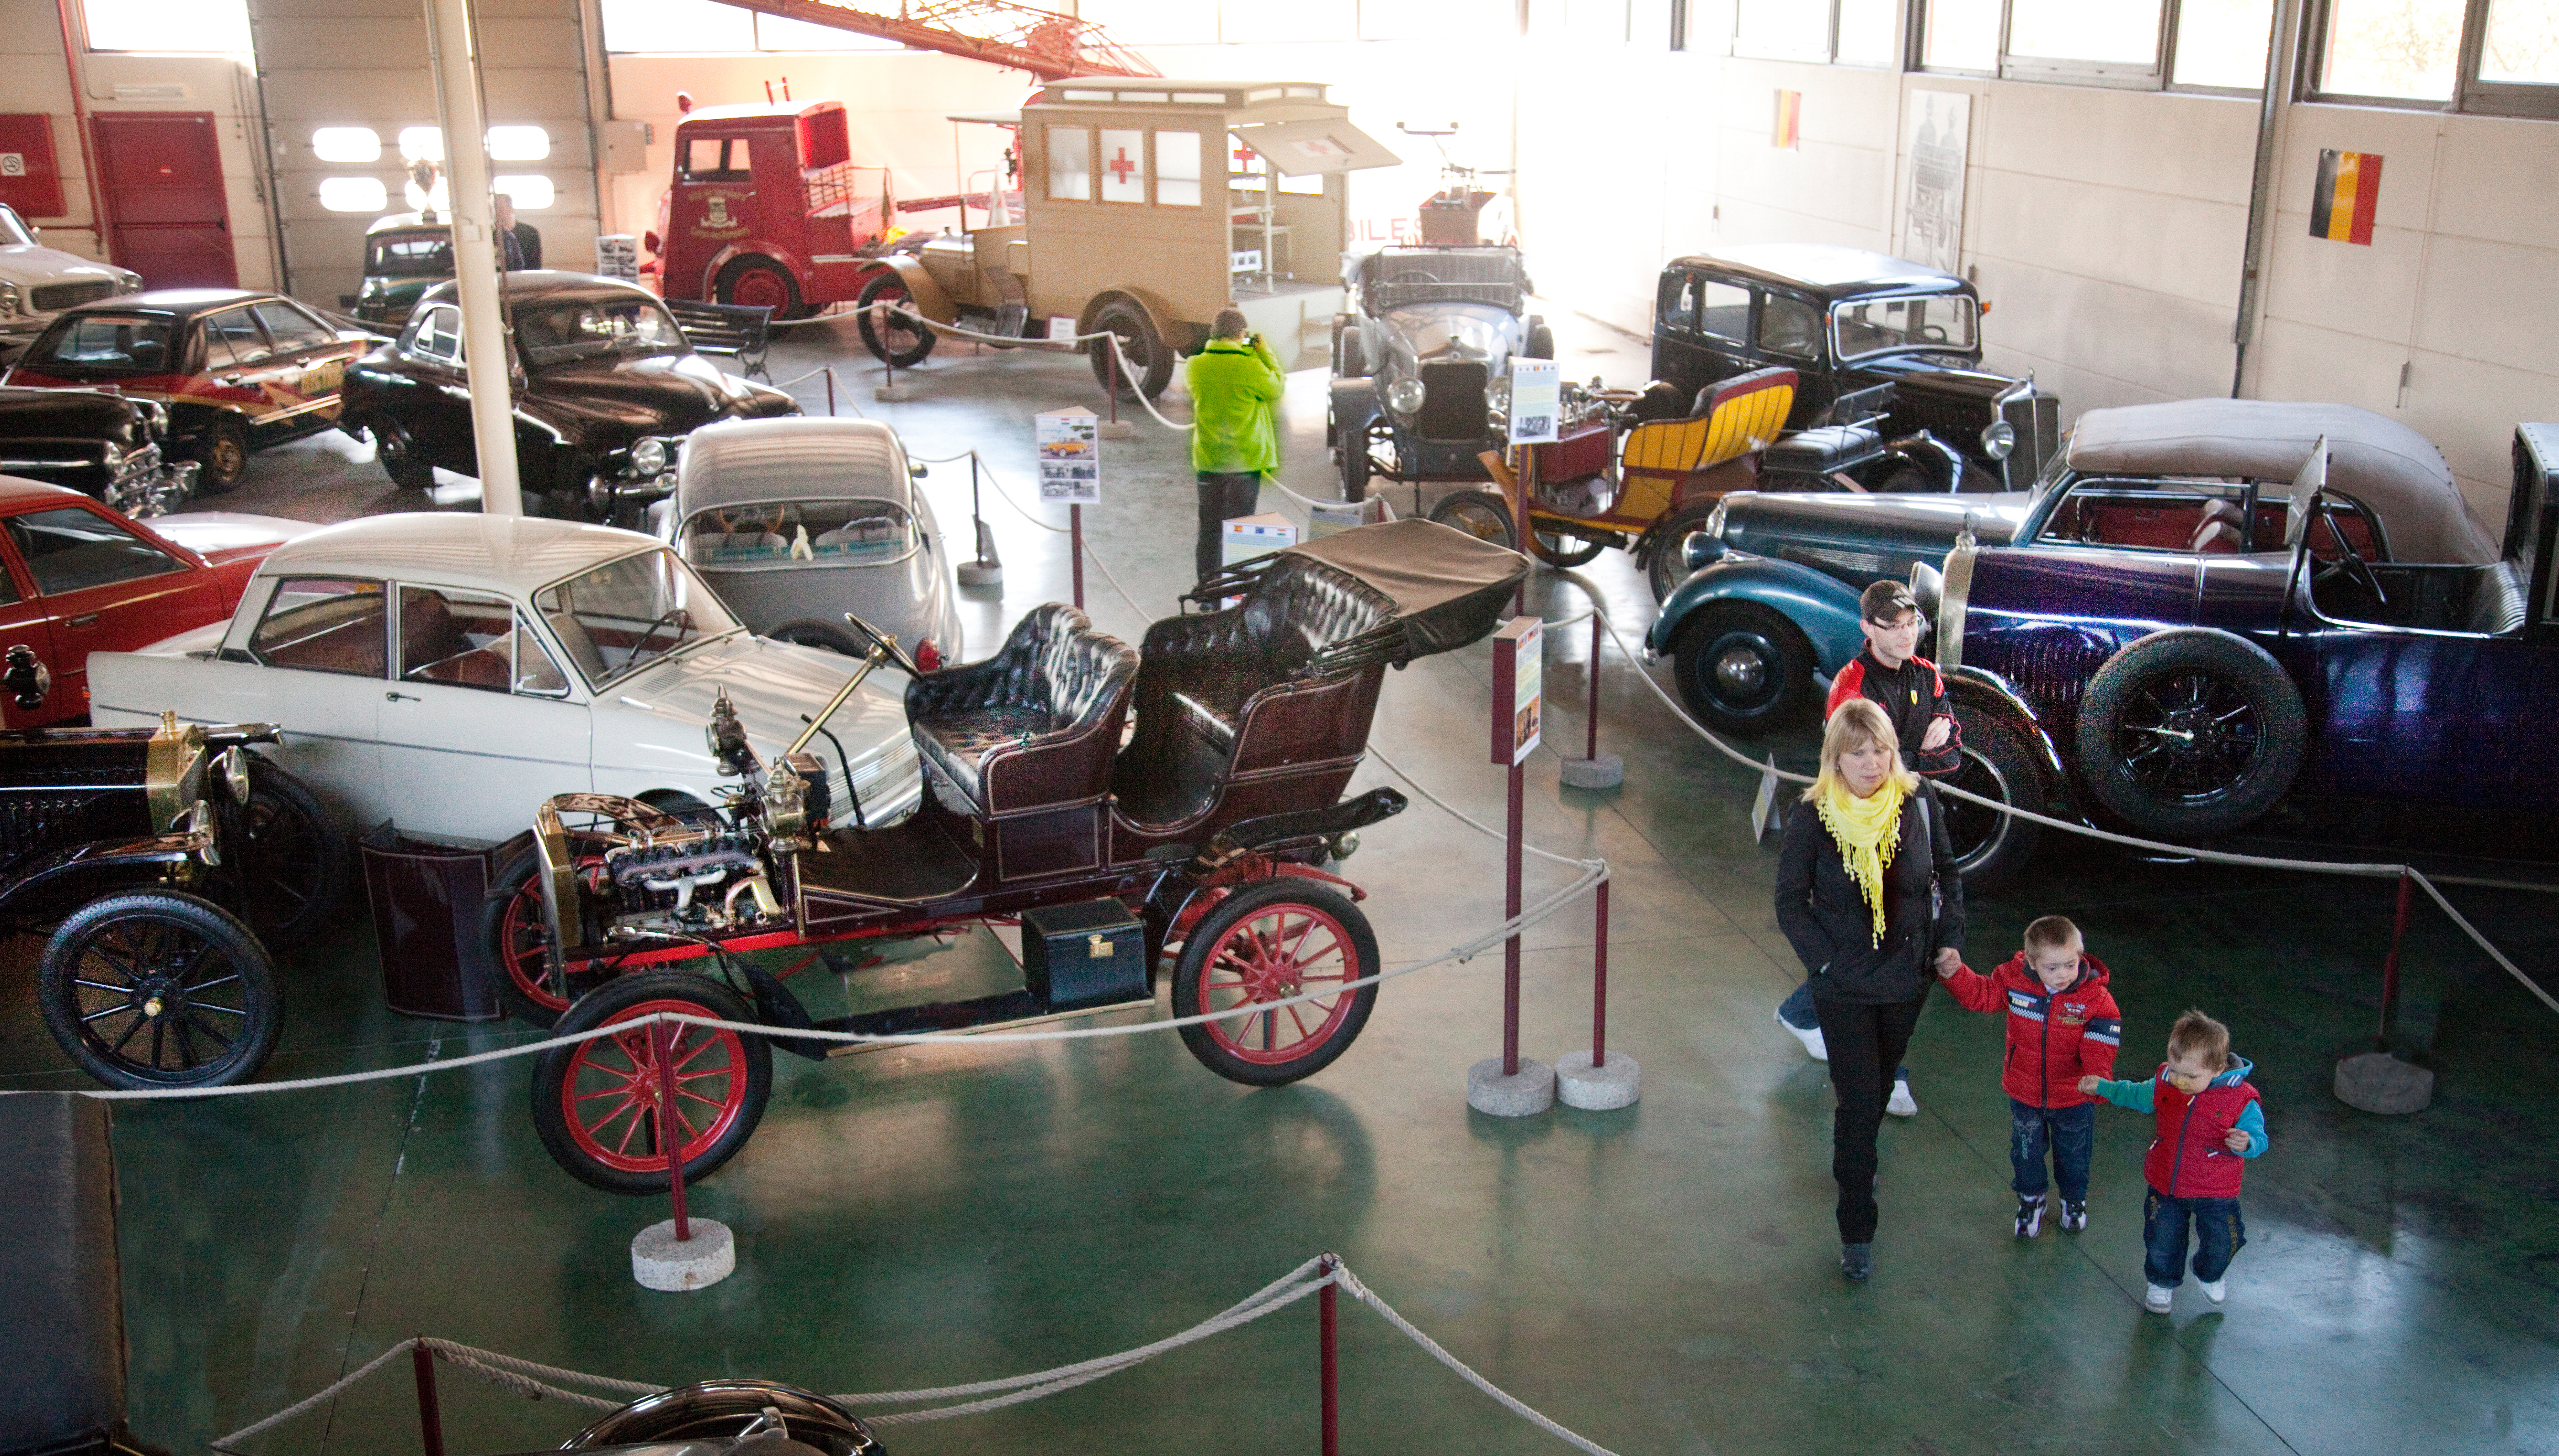 Ontdek de geschiedenis van de automobiel en het wegtransport sinds 1895 in het Automobielmuseum Mahymobiles in Leuze-en-Hainaut